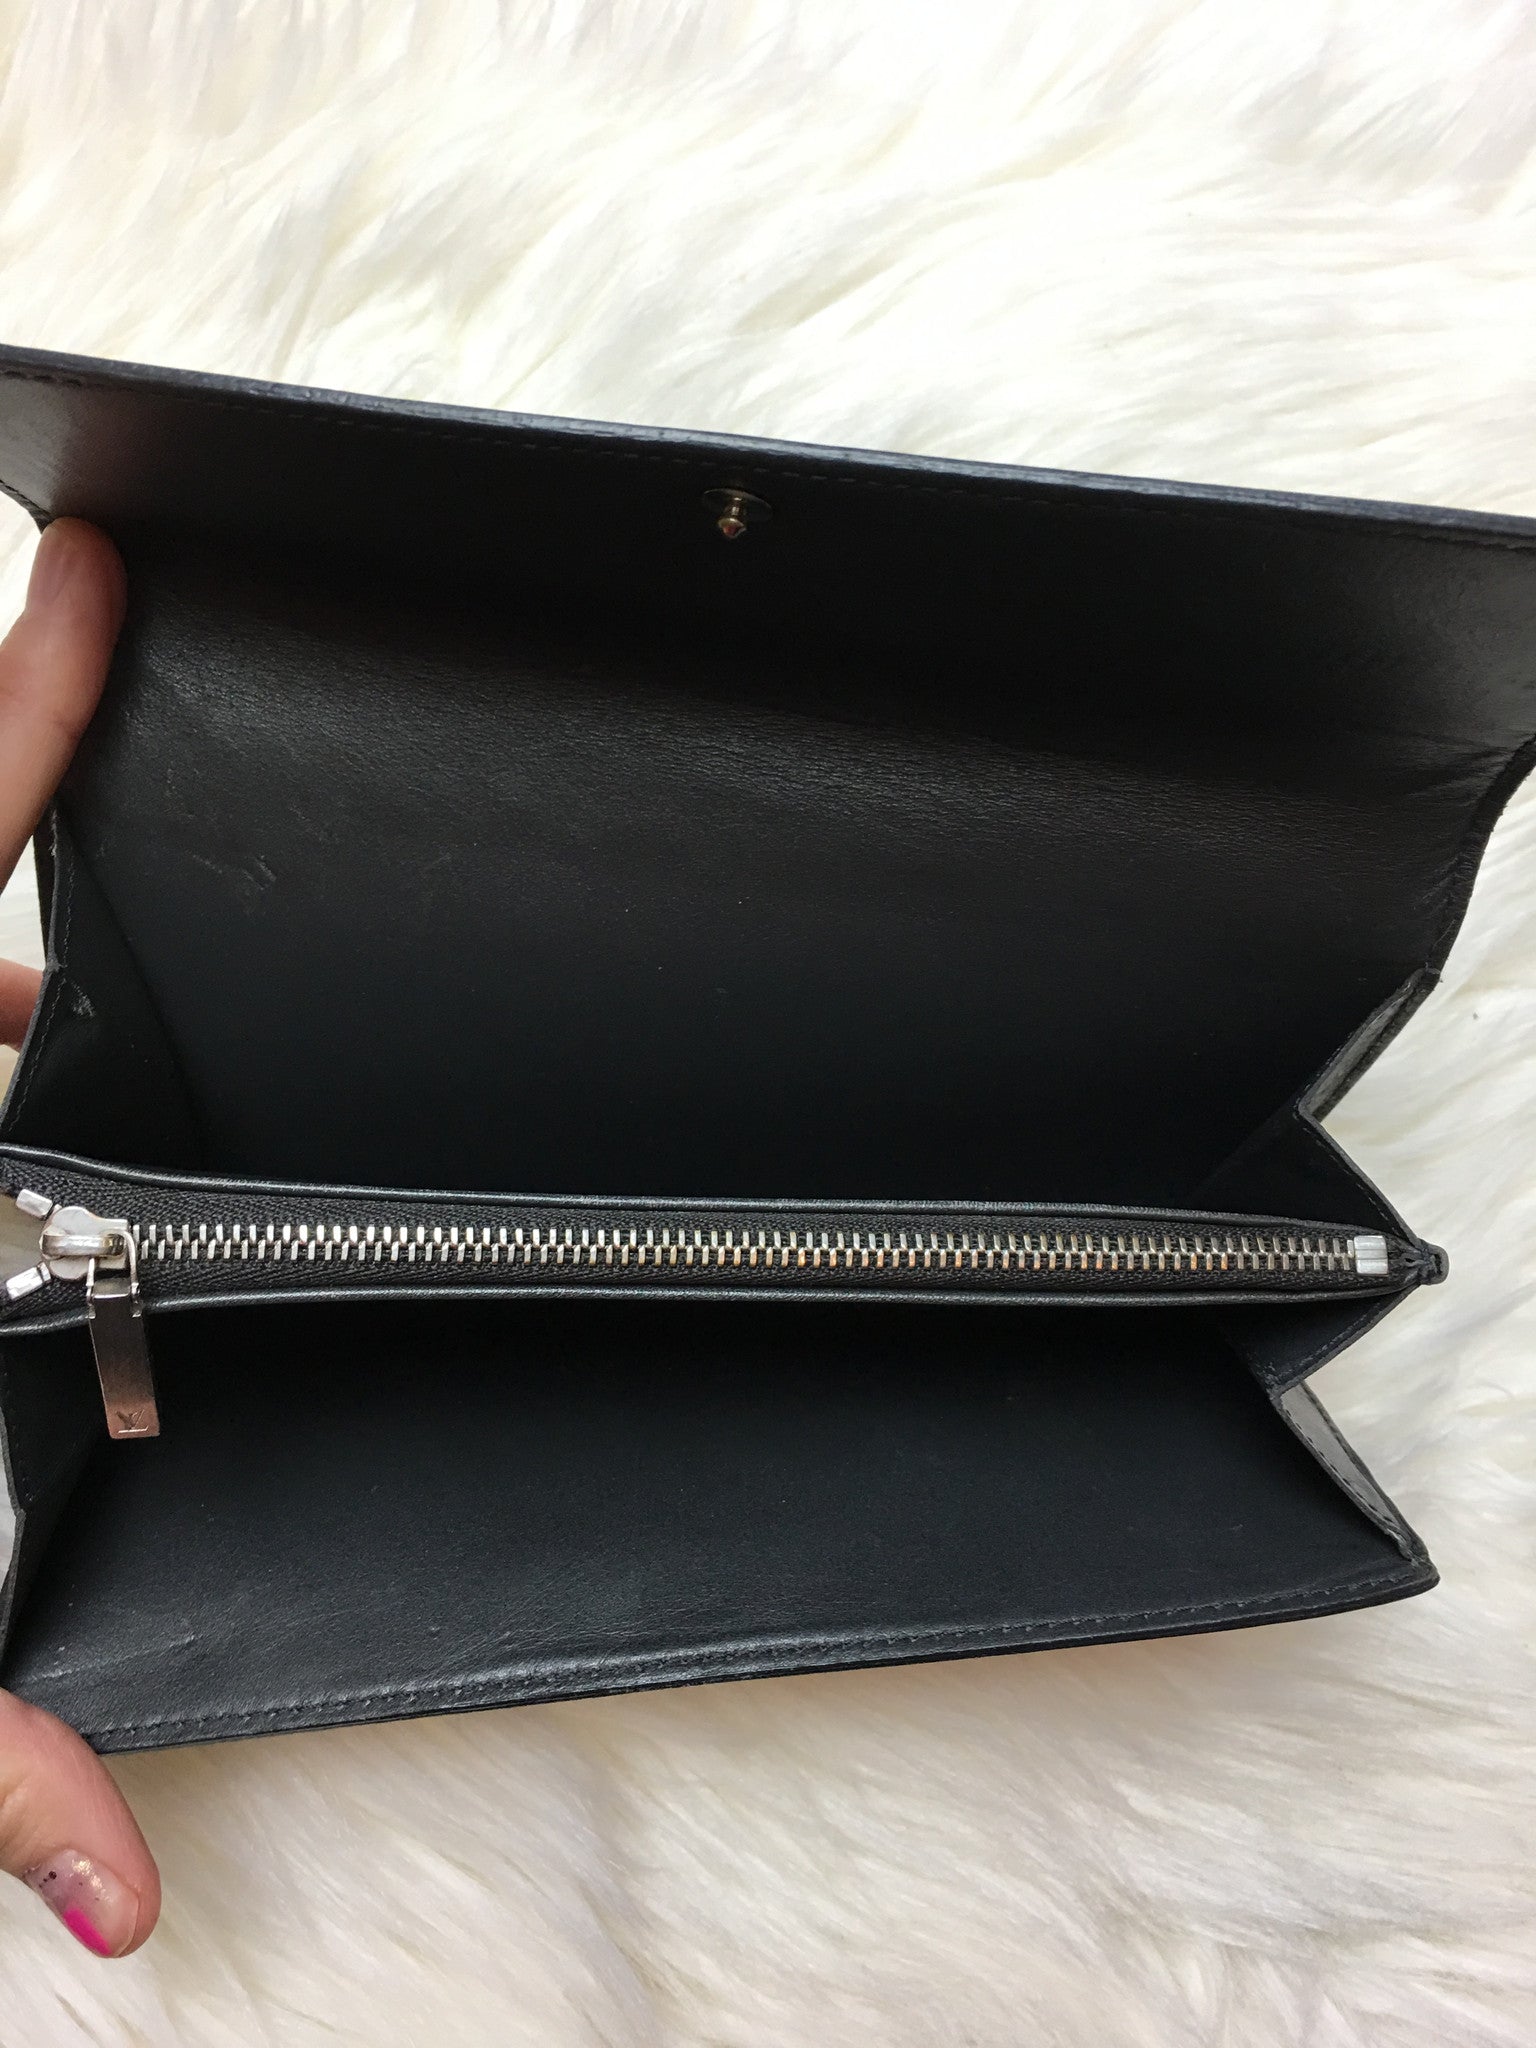 Wallet Louis Vuitton Beige in Not specified - 25251743